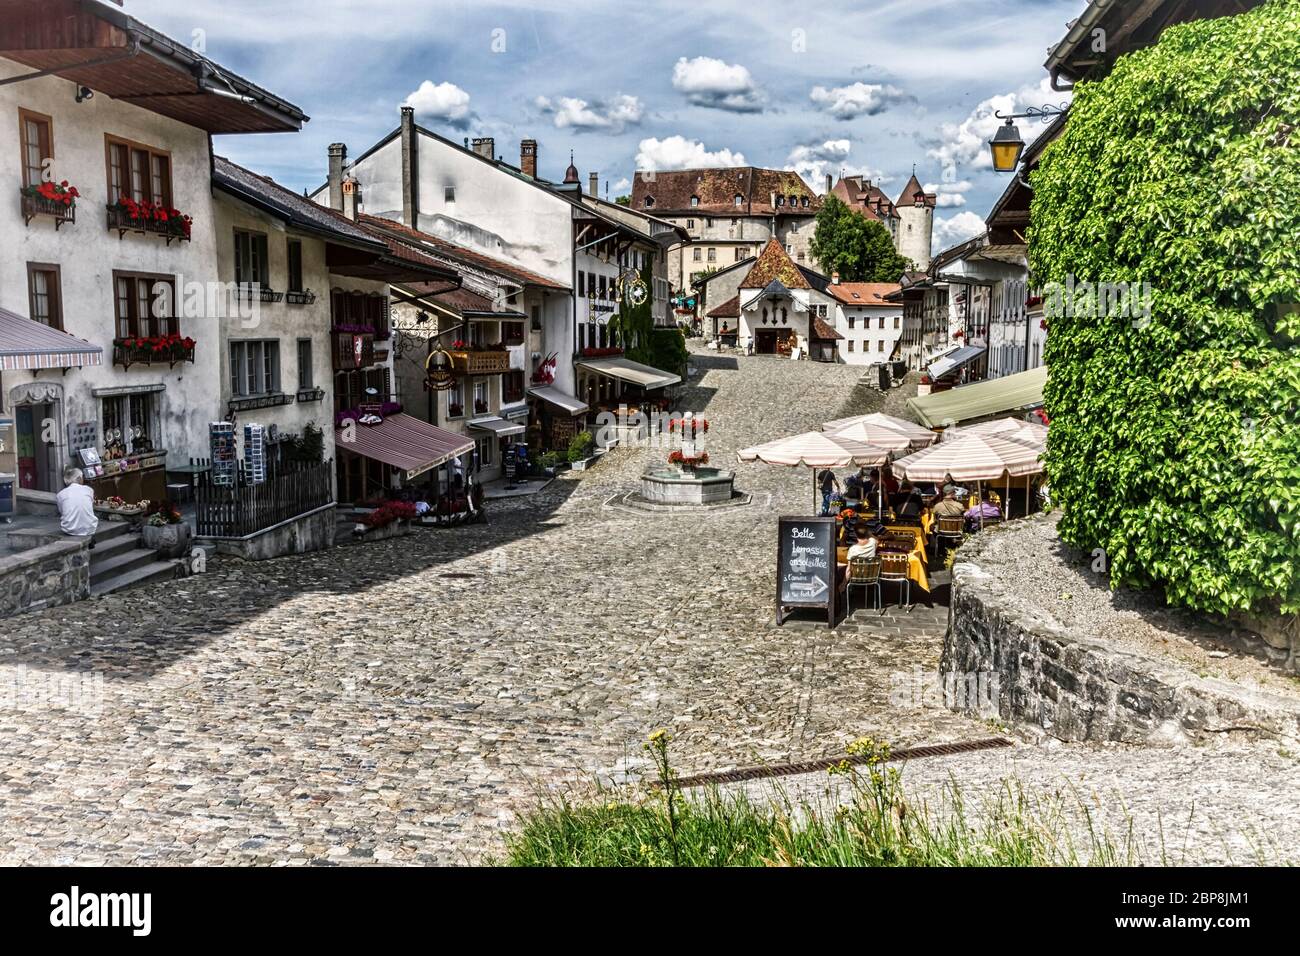 Rue principale de Gruyeres village par jour, Fribourg, Suisse Banque D'Images